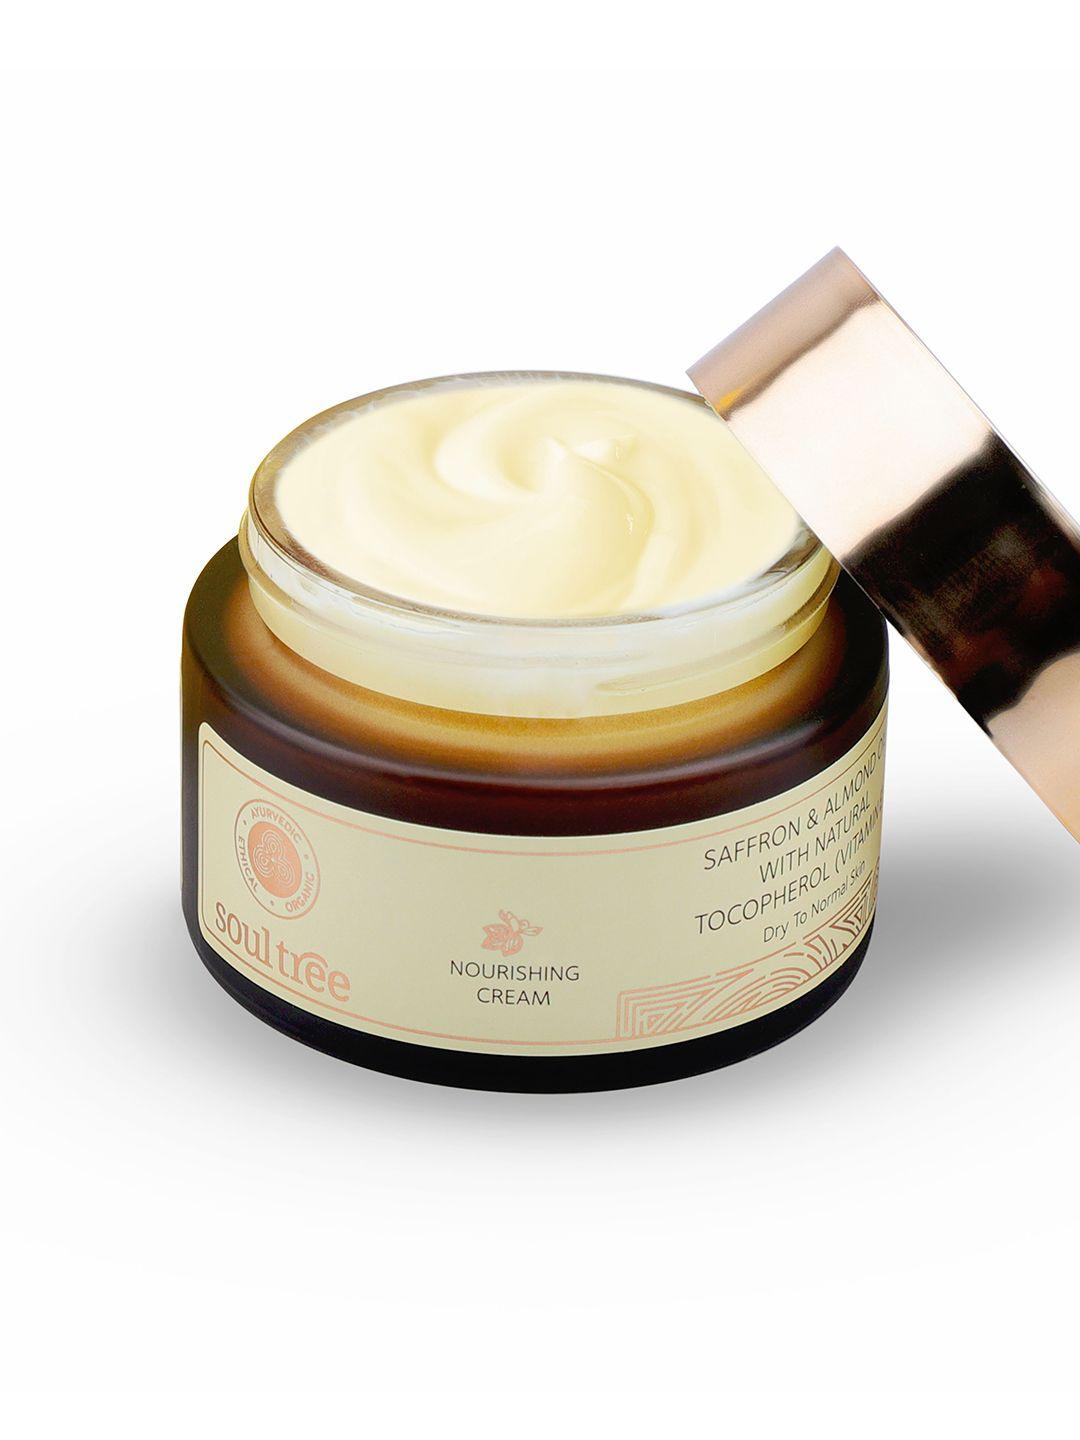 soultree nourishing cream with saffron almond oil & natural vitamin e - 50g